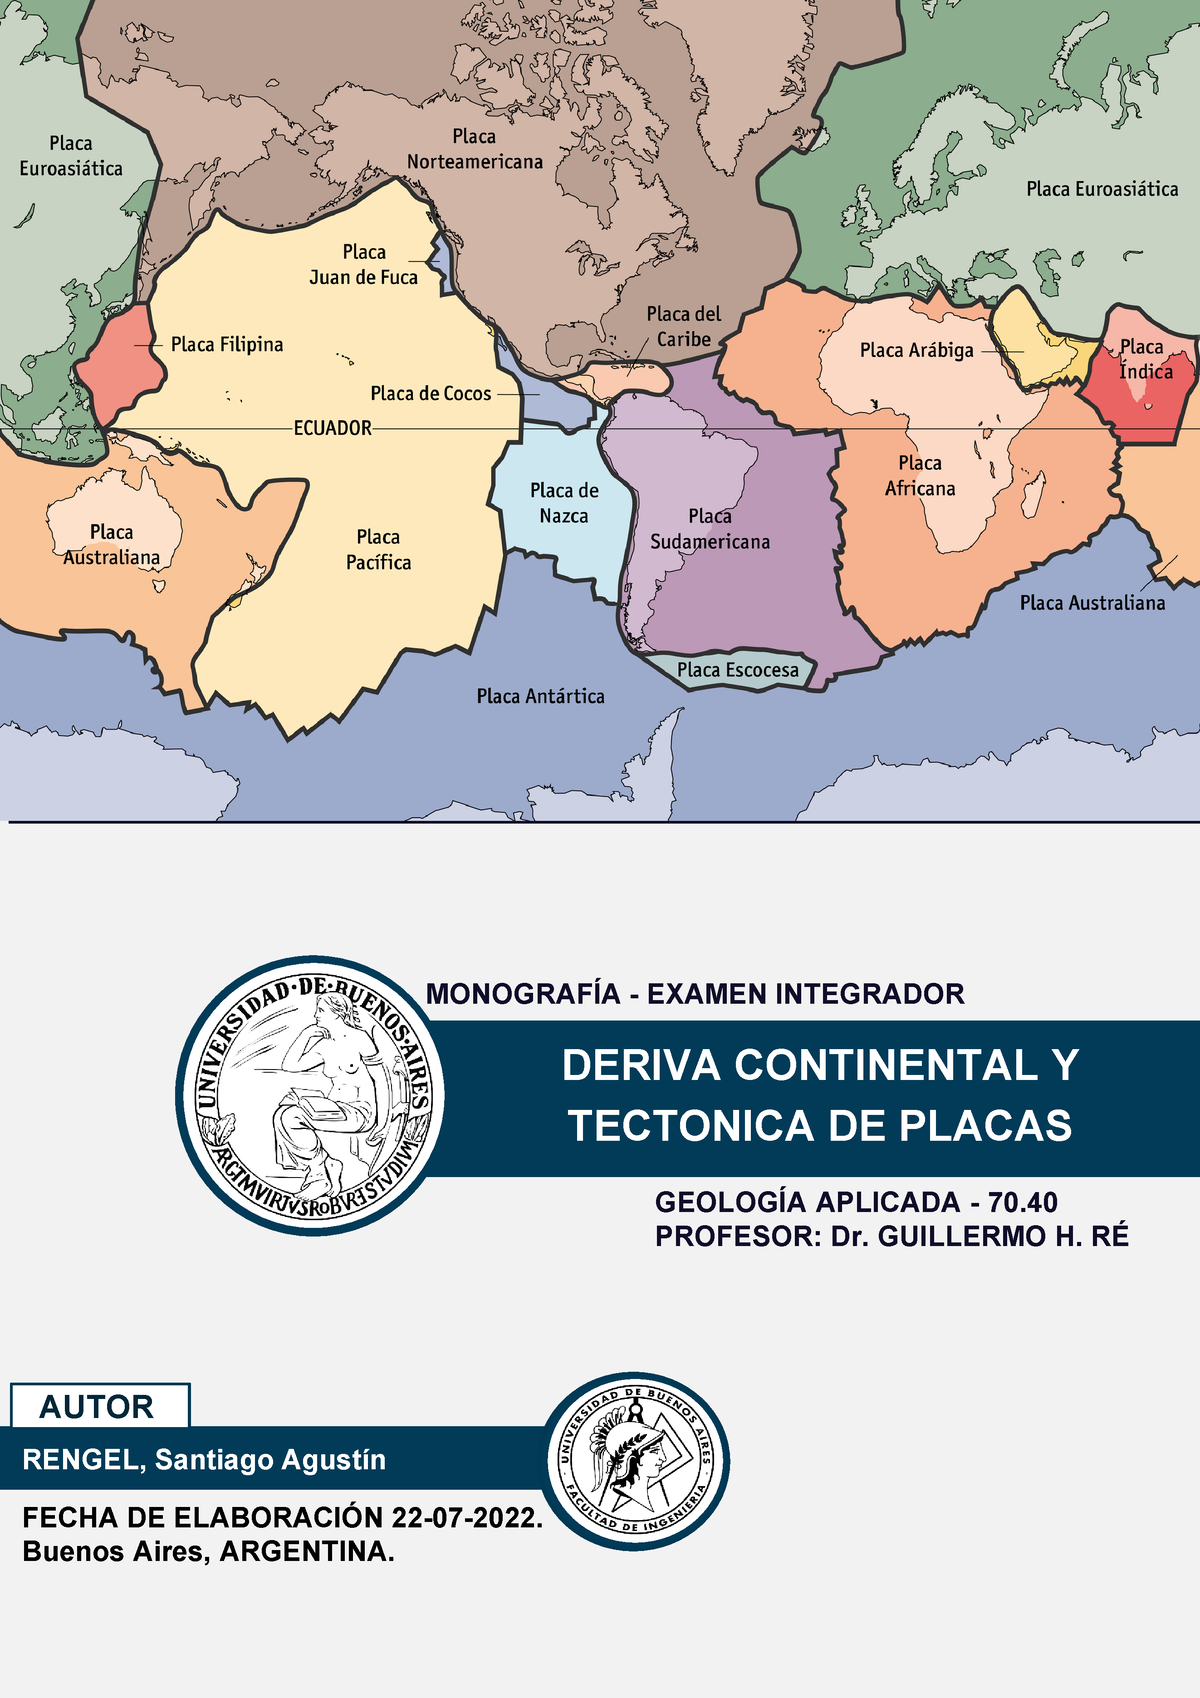 Monografía Deriva Continental y Tectónica de Placas Geología Aplicada GEOLOGÍA APLICADA